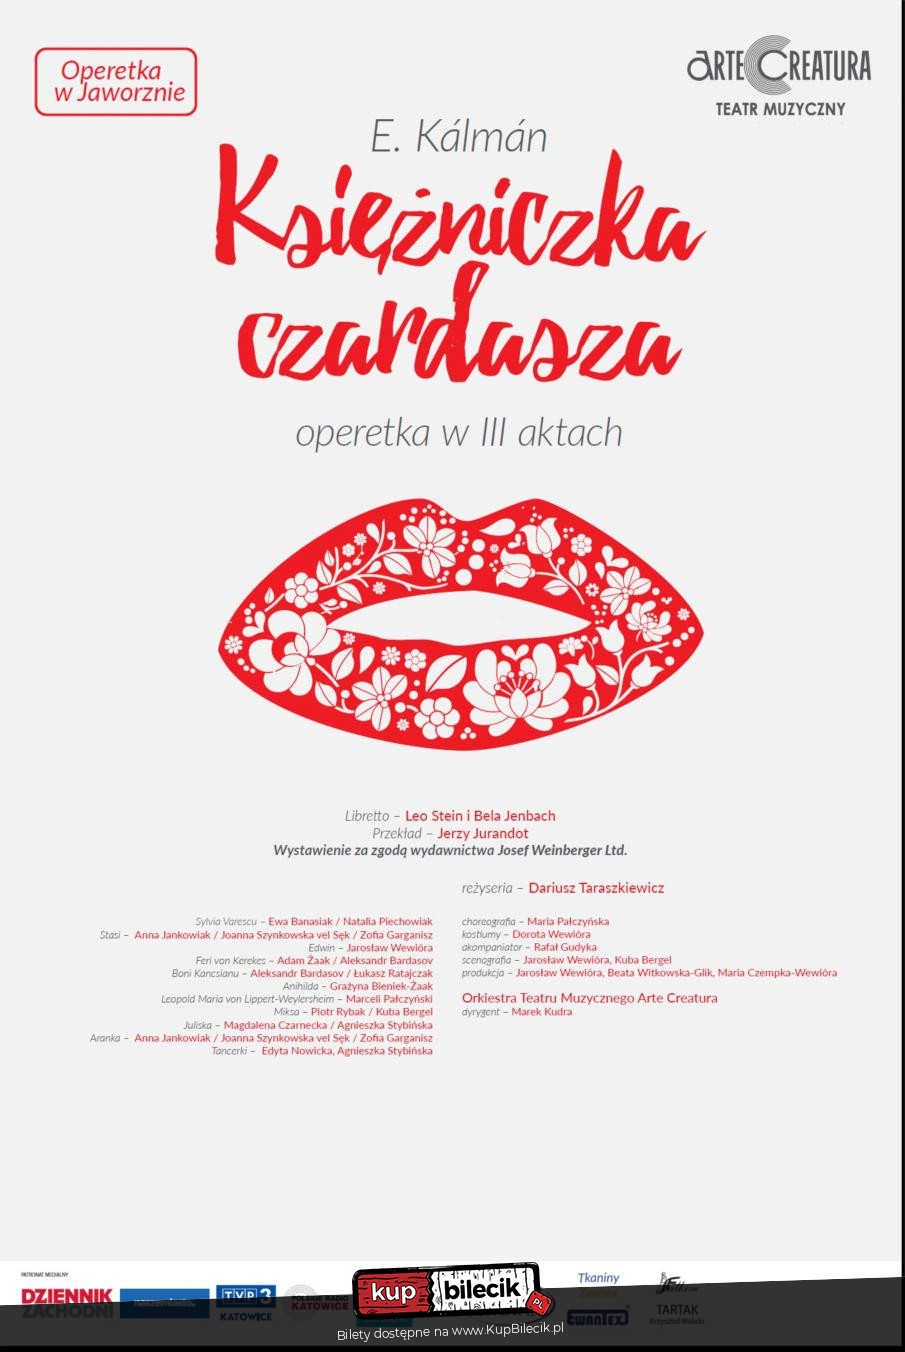 Plakat Księżniczka czardasza I.Kalman operetka - Arte Creatura Teatr Muzyczny 112260